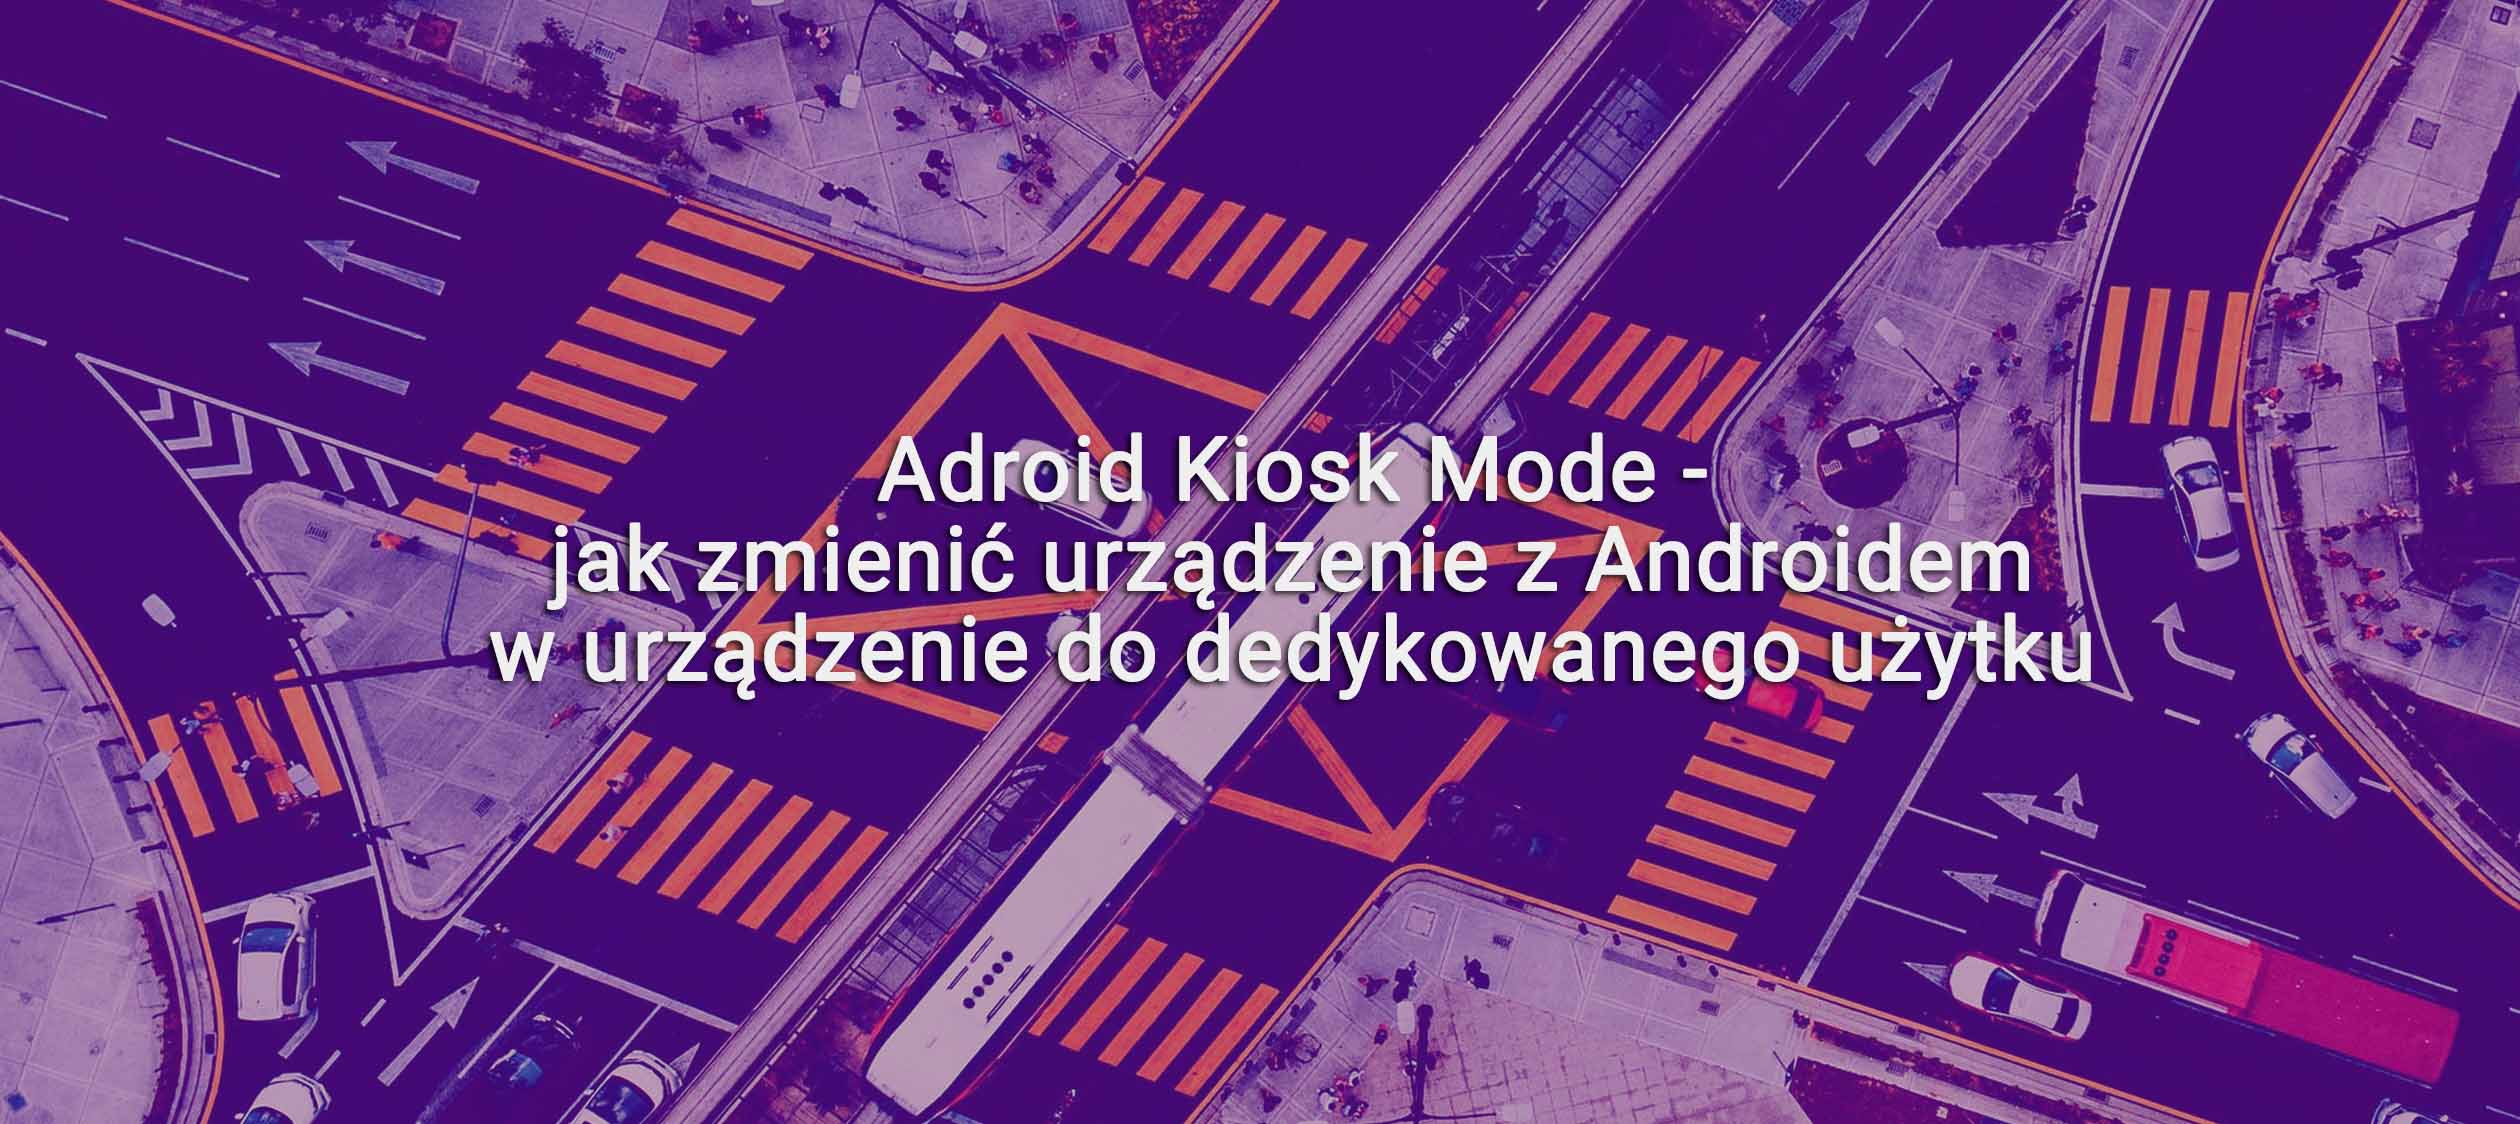 Adroid Kiosk Mode – jak zmienić urządzenie z Androidem w urządzenie do dedykowanego użytku